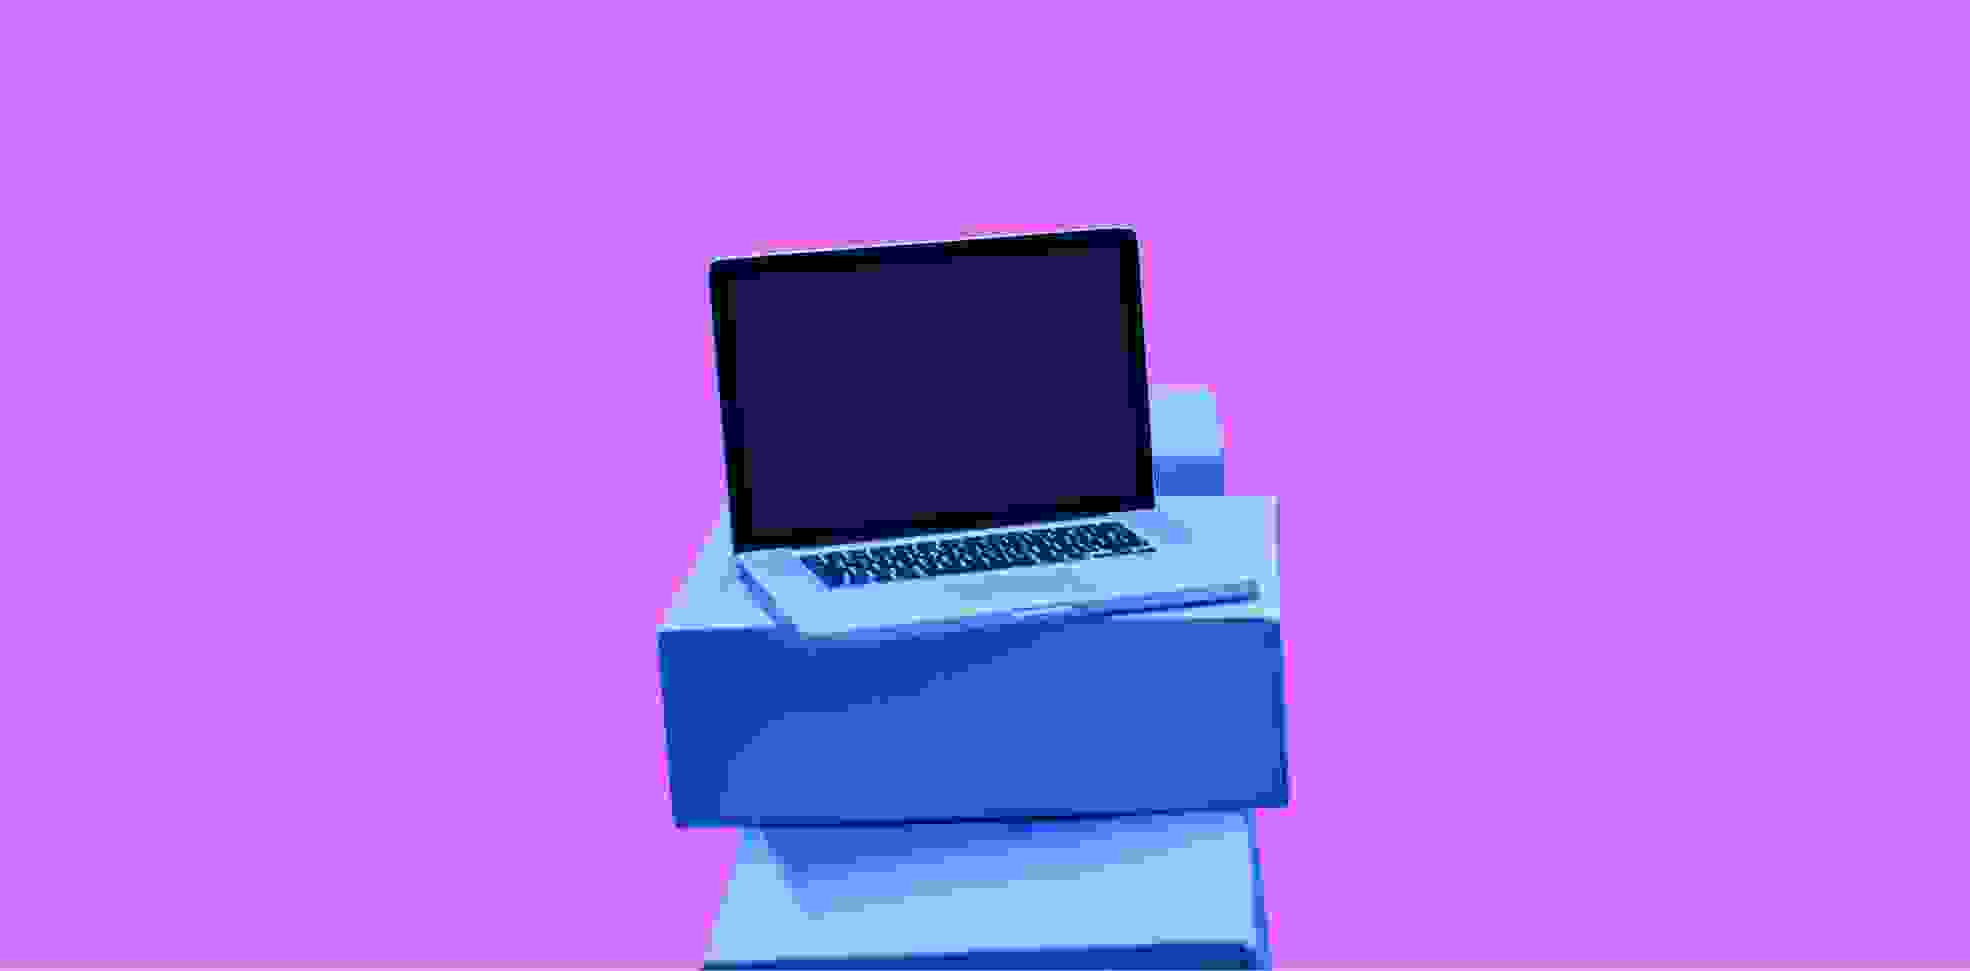 a laptop lies on boxes